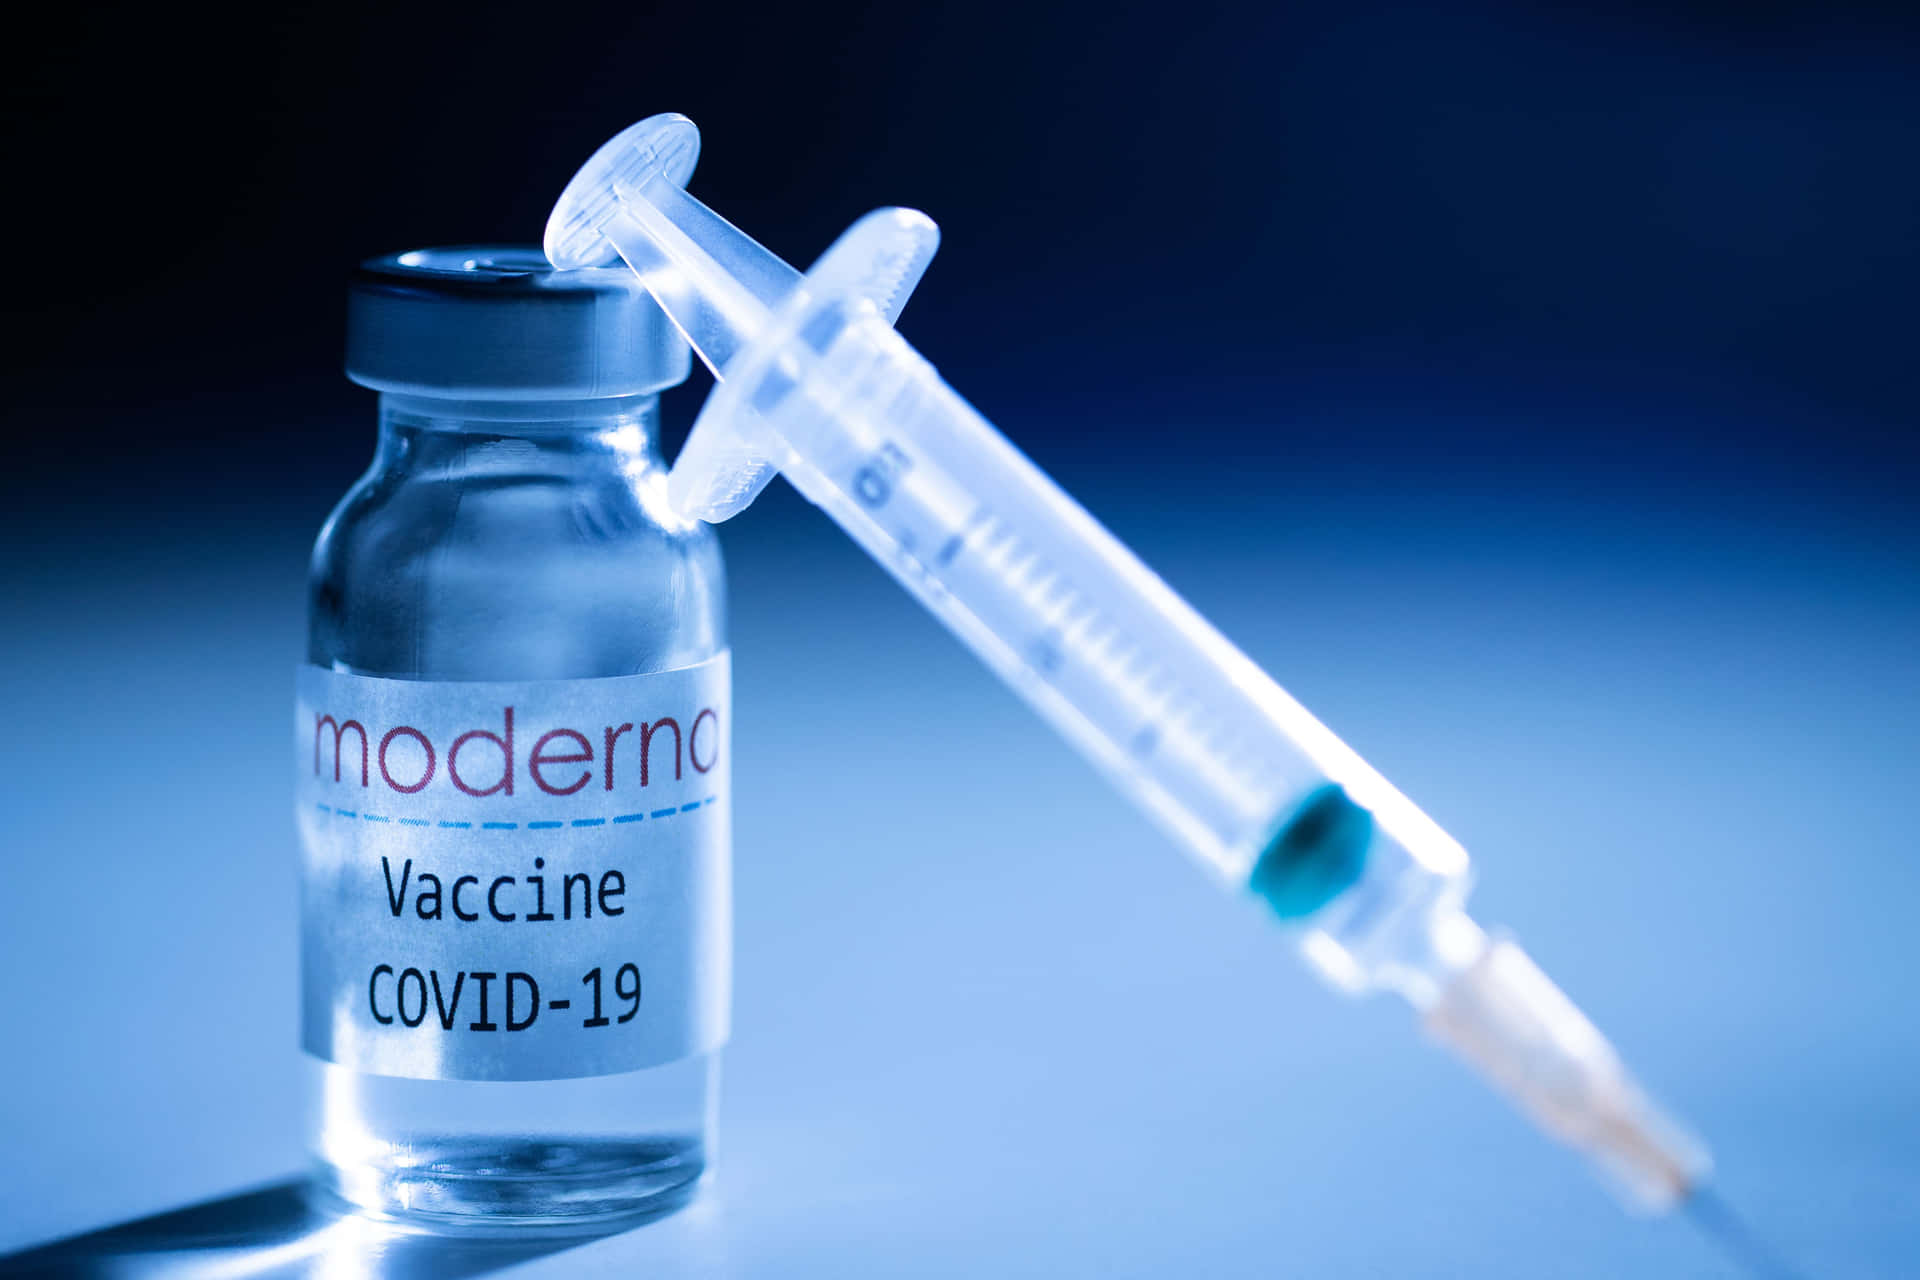 Modernaimpfstoffbild